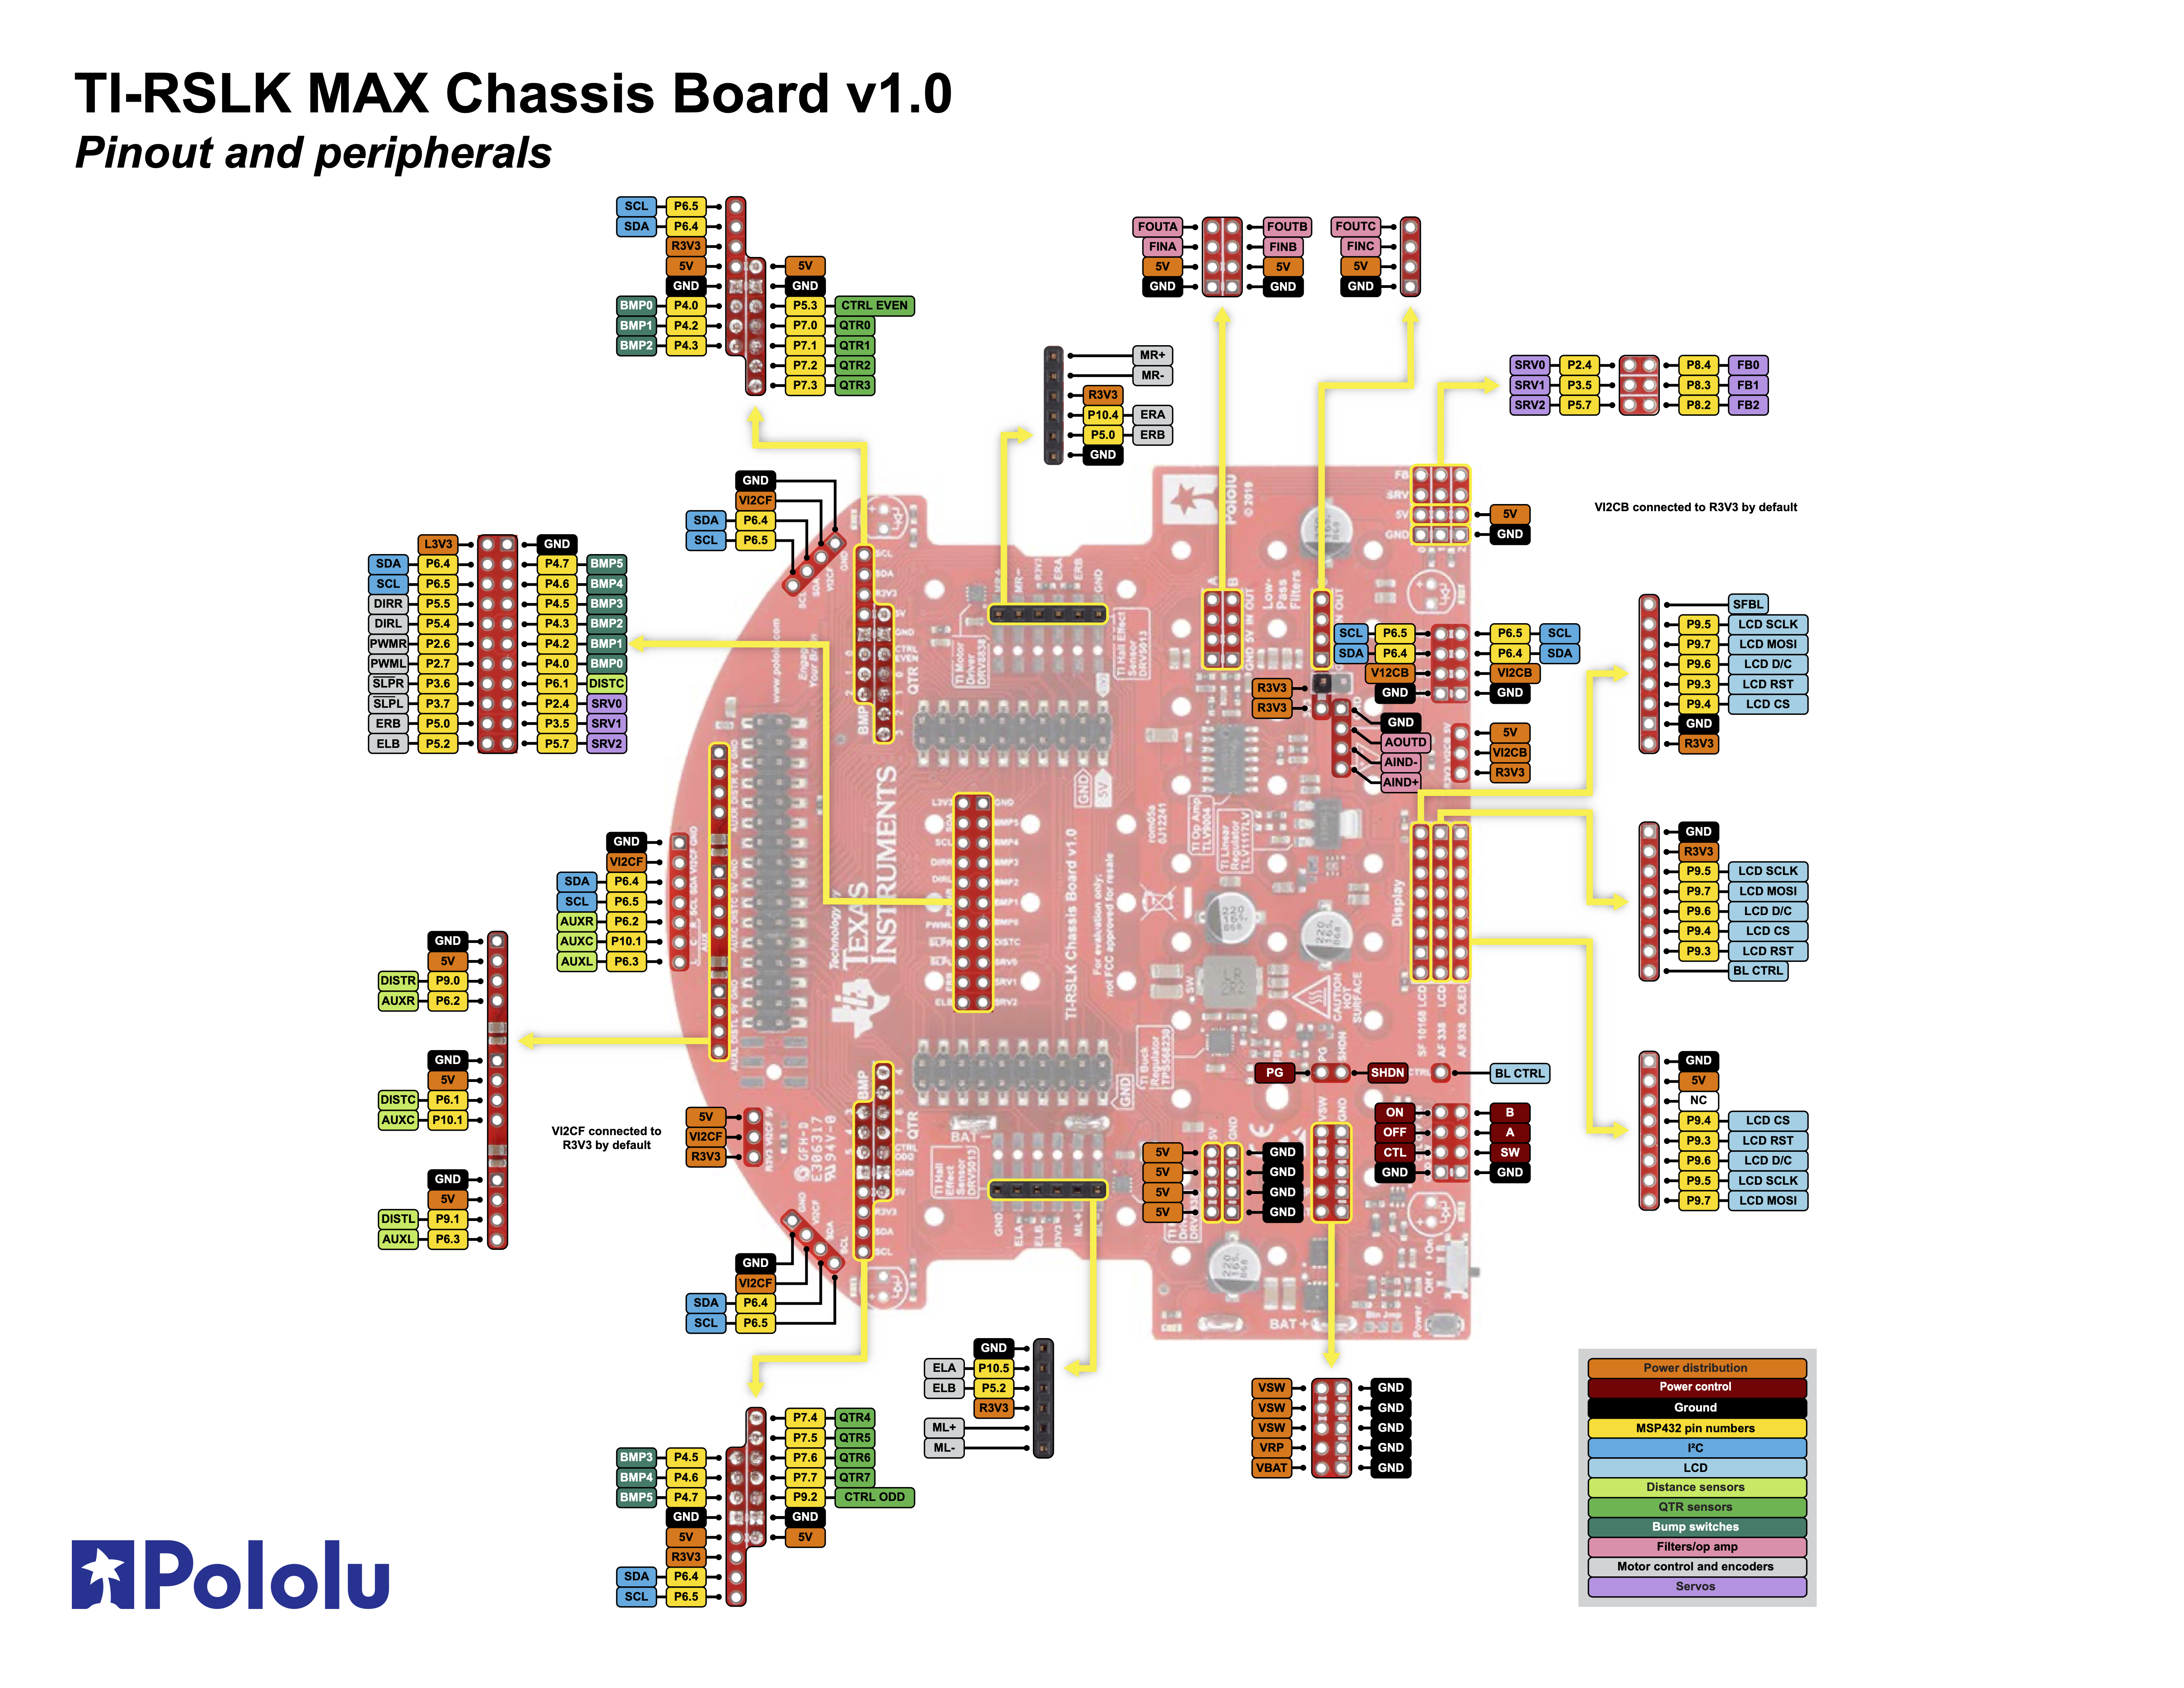 TI-RSLK MAX Chassis Board v1.0 Pin Map